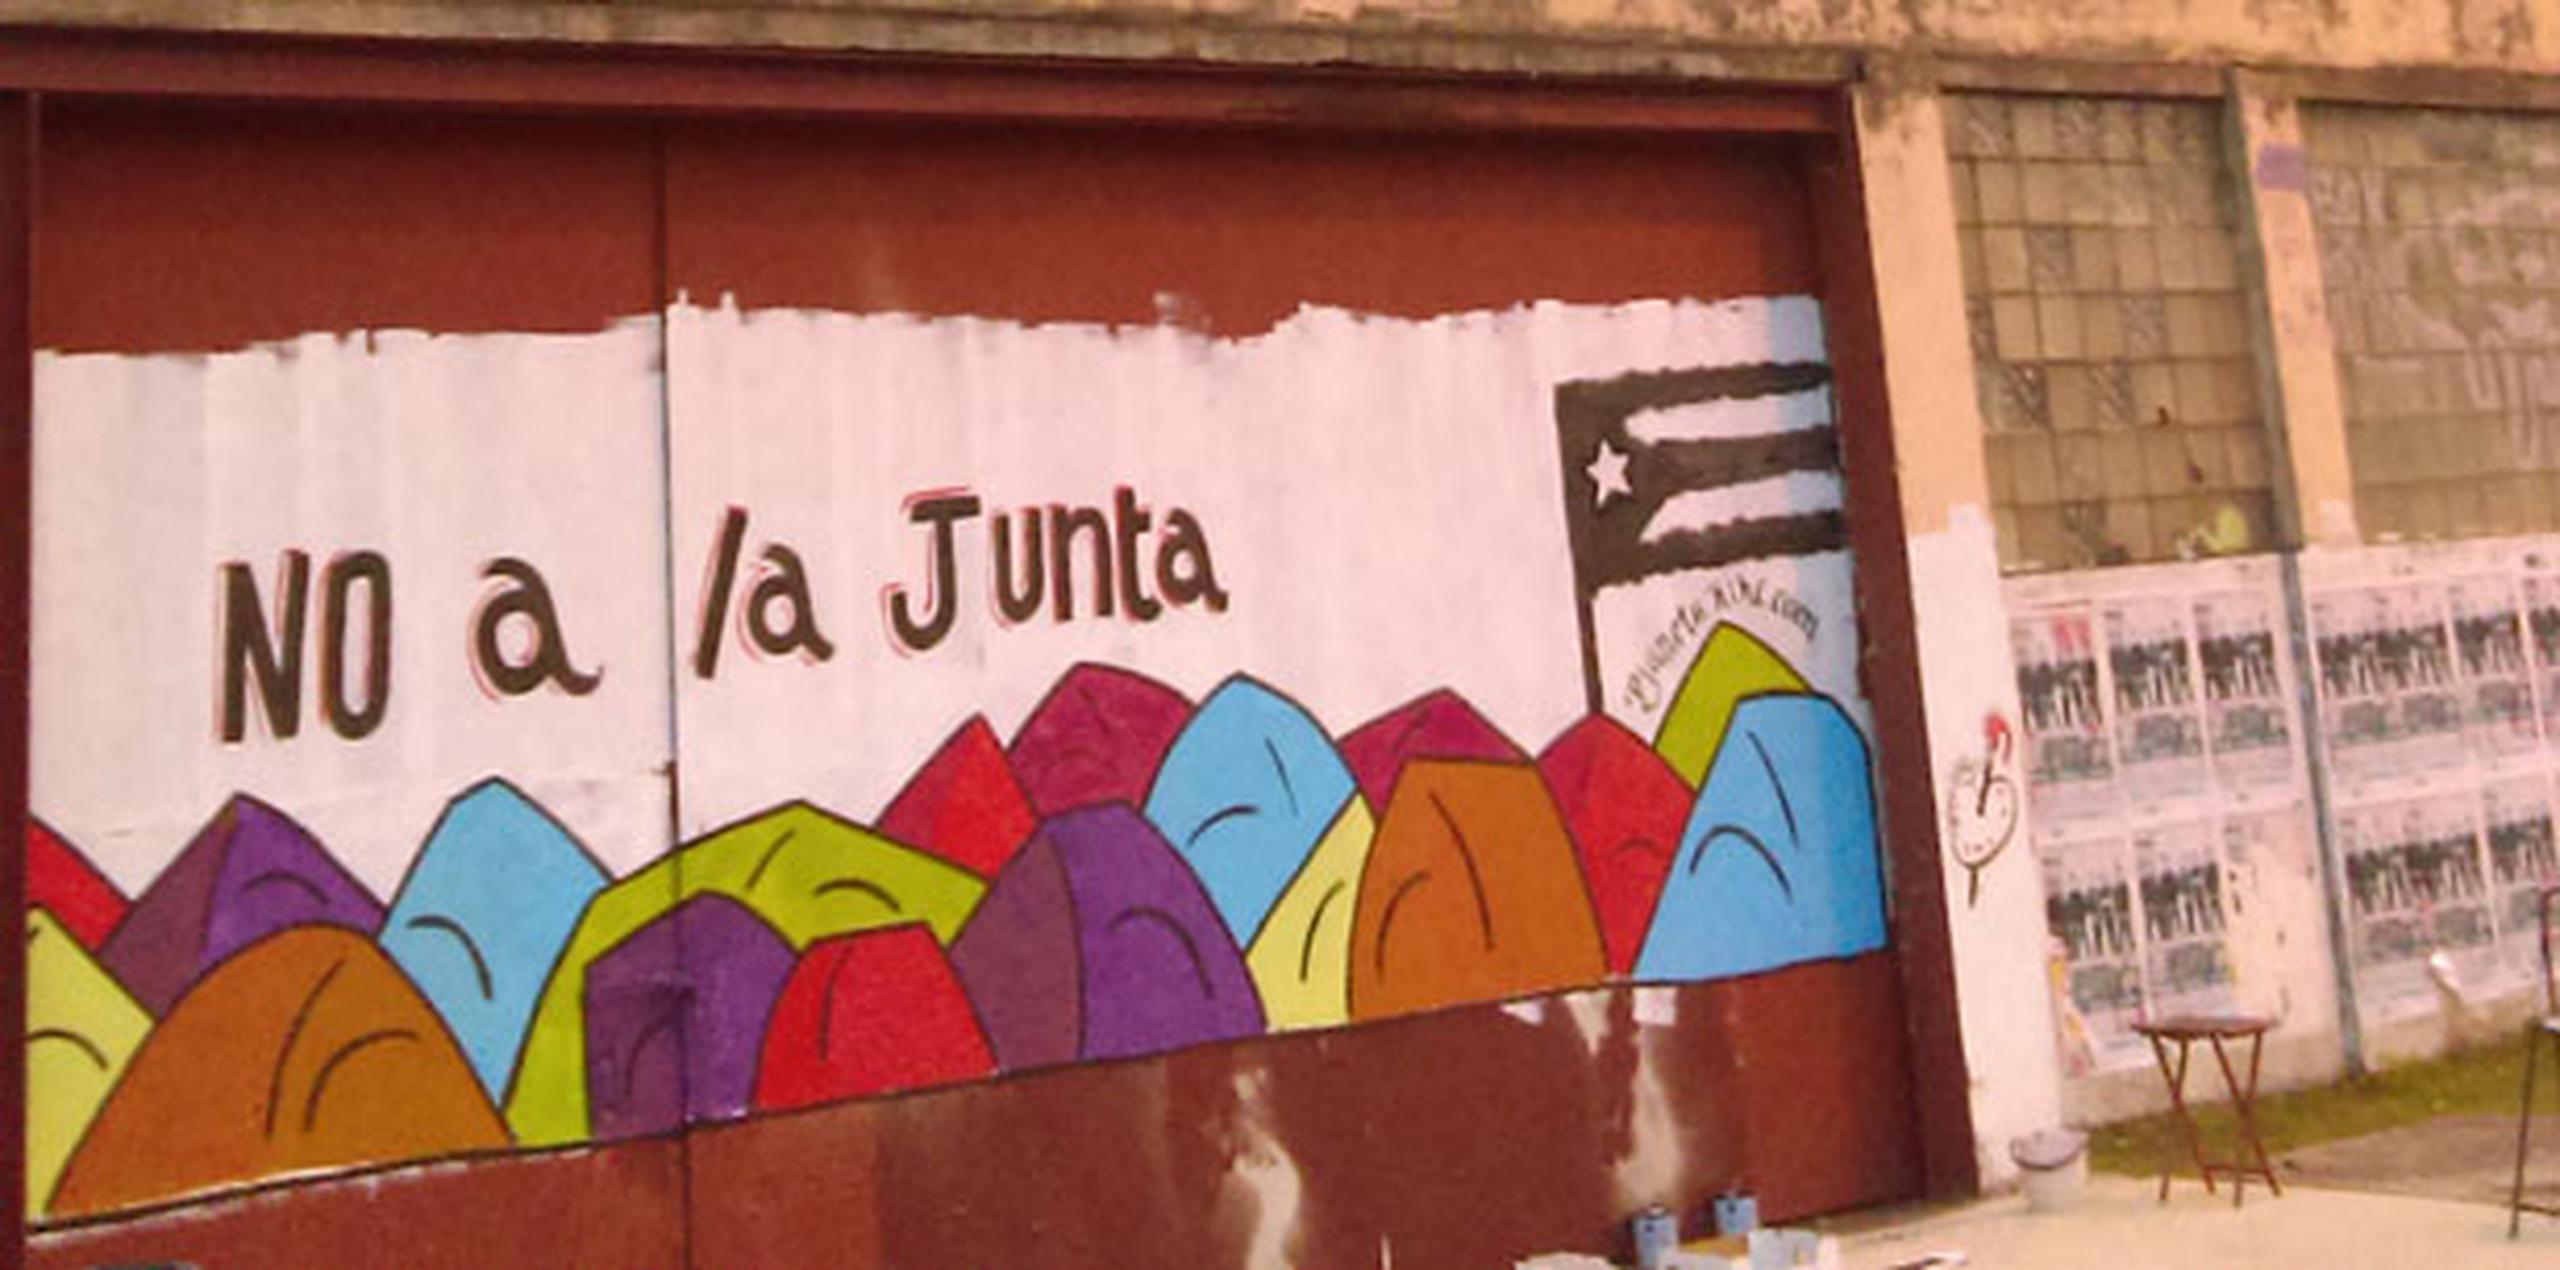 El mural mostrará varias casetas de campaña en diversos colores, que representan la resistencia de la juventud que está apostada frente al Tribunal Federal en Hato Rey, en protesta por la imposición de la junta.(Suministrada)